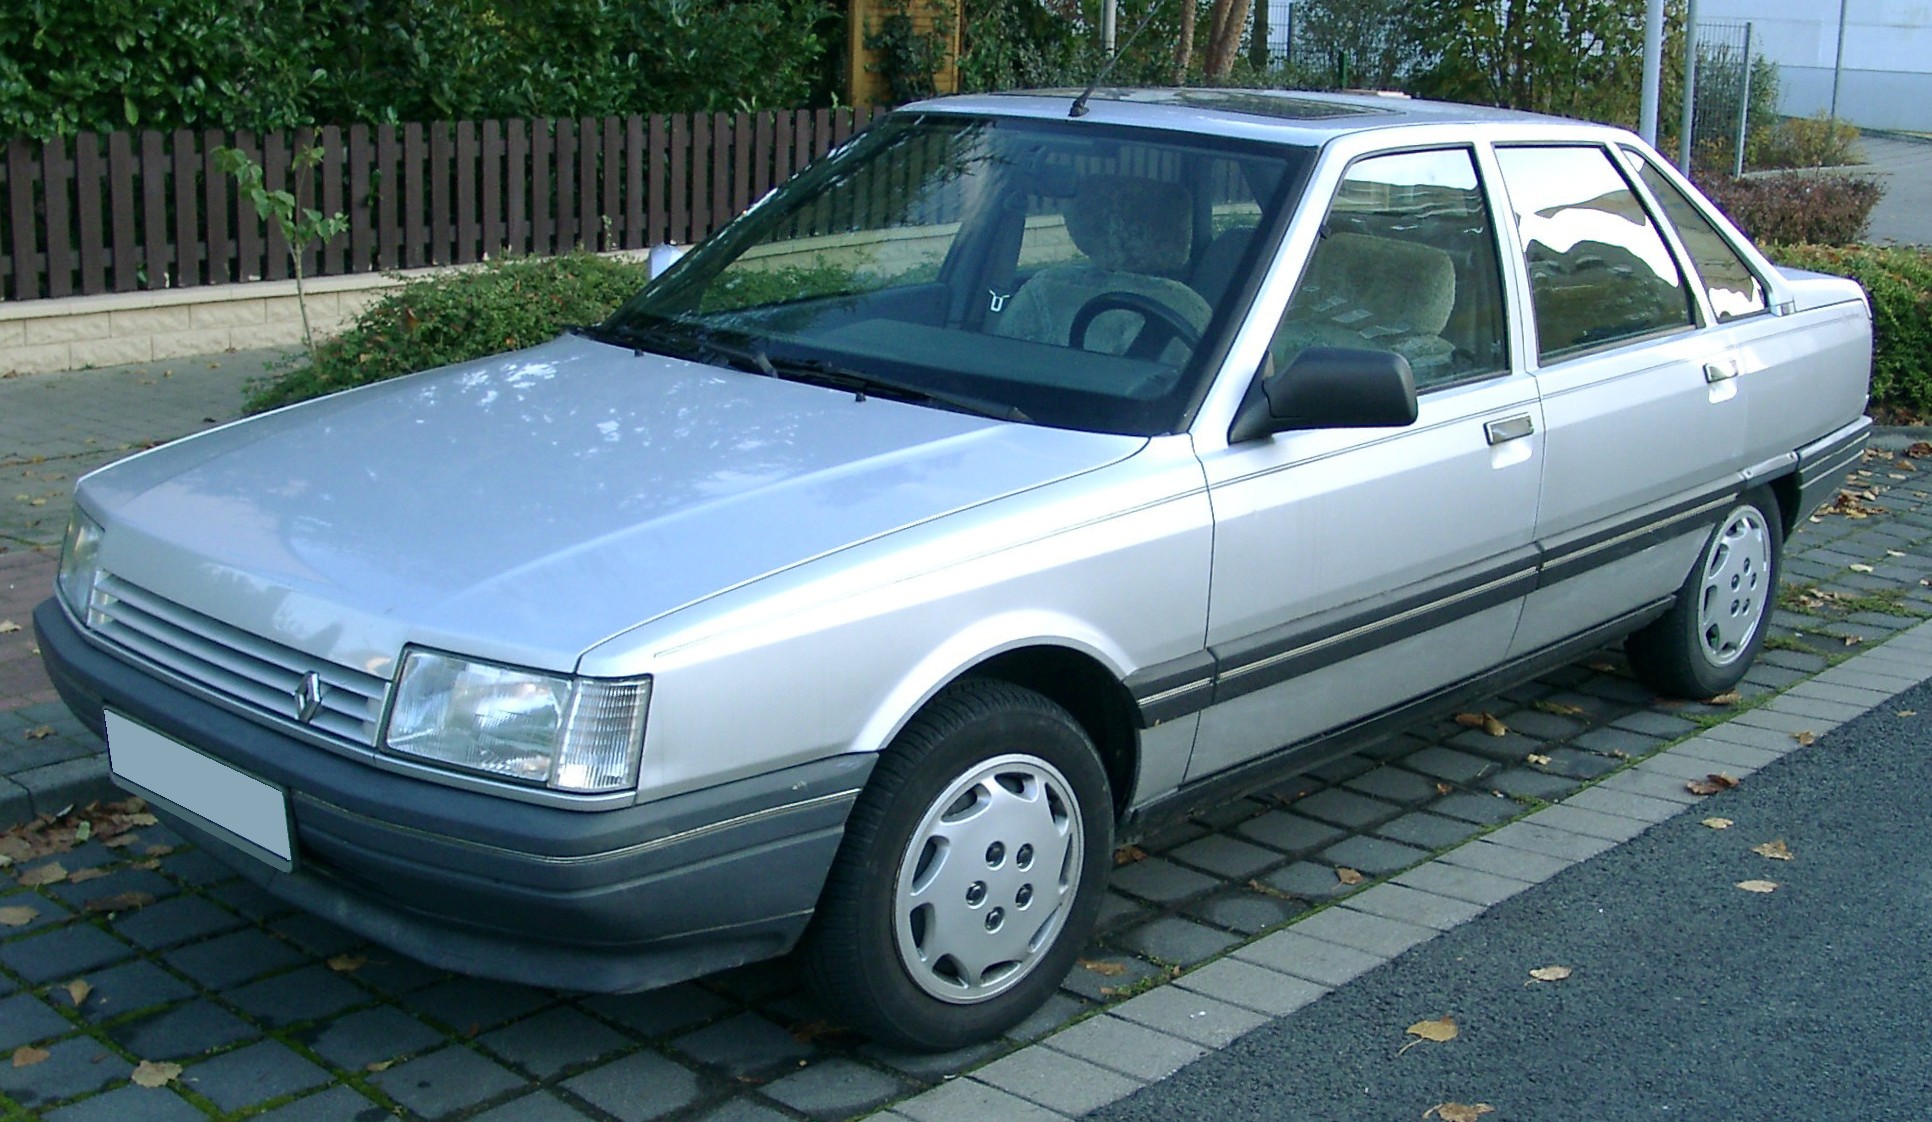 R21 / 21 (1986-1994)